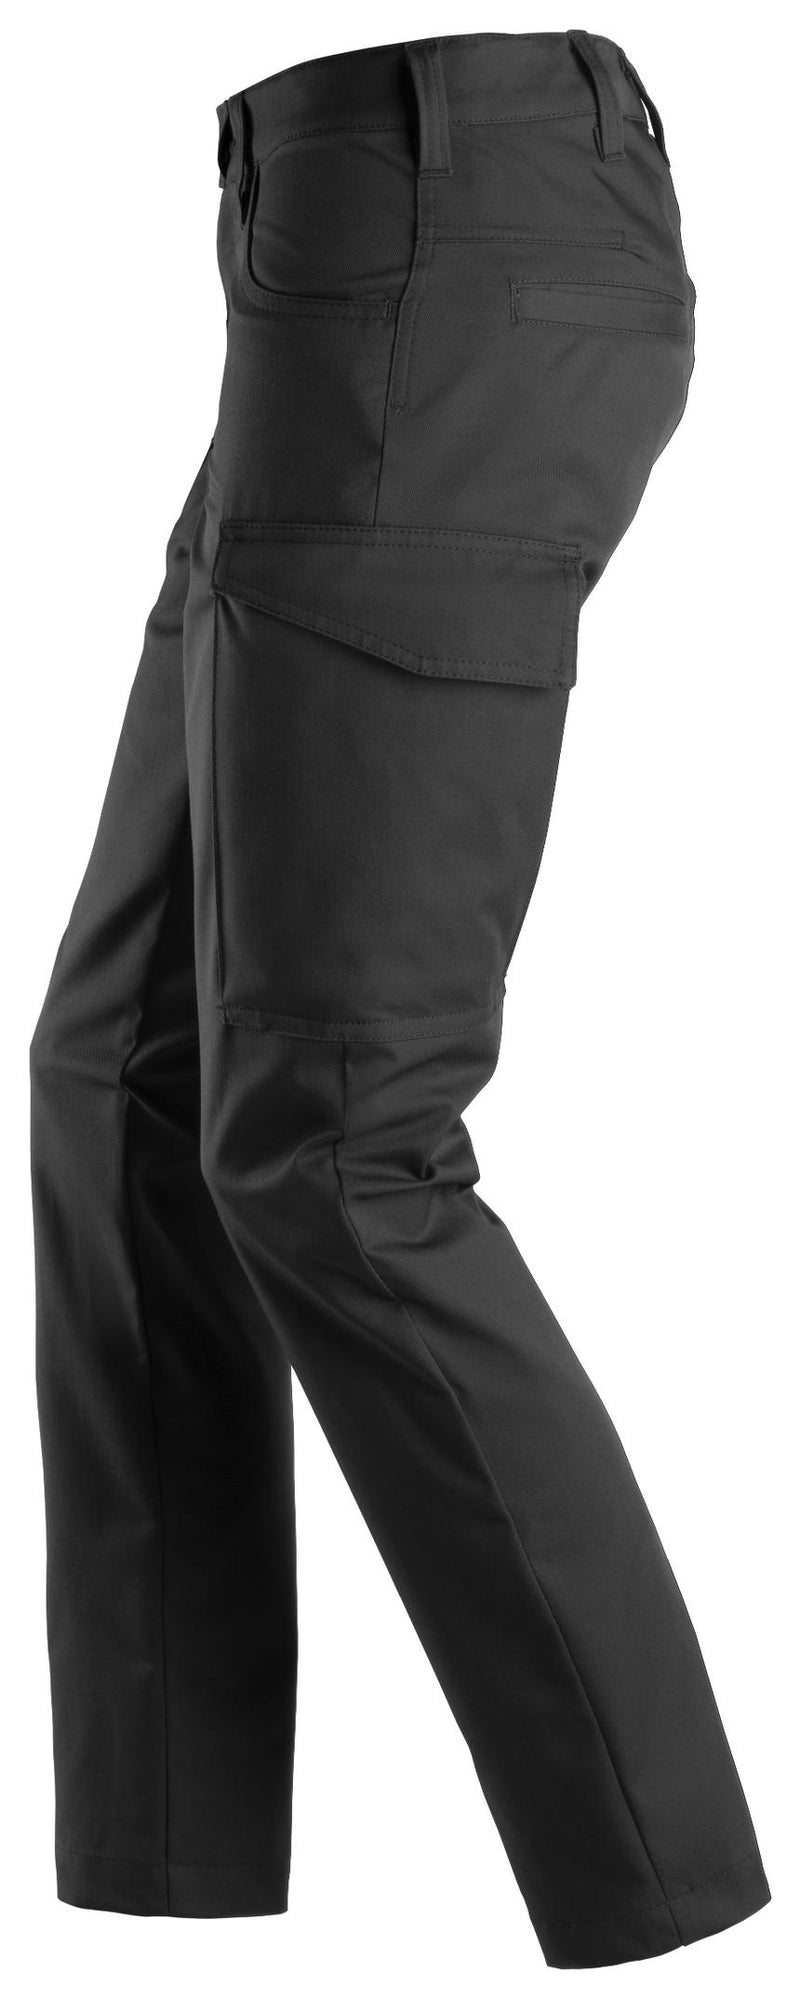 Snickers Workwear 6700 Women's Service Trousers - Black